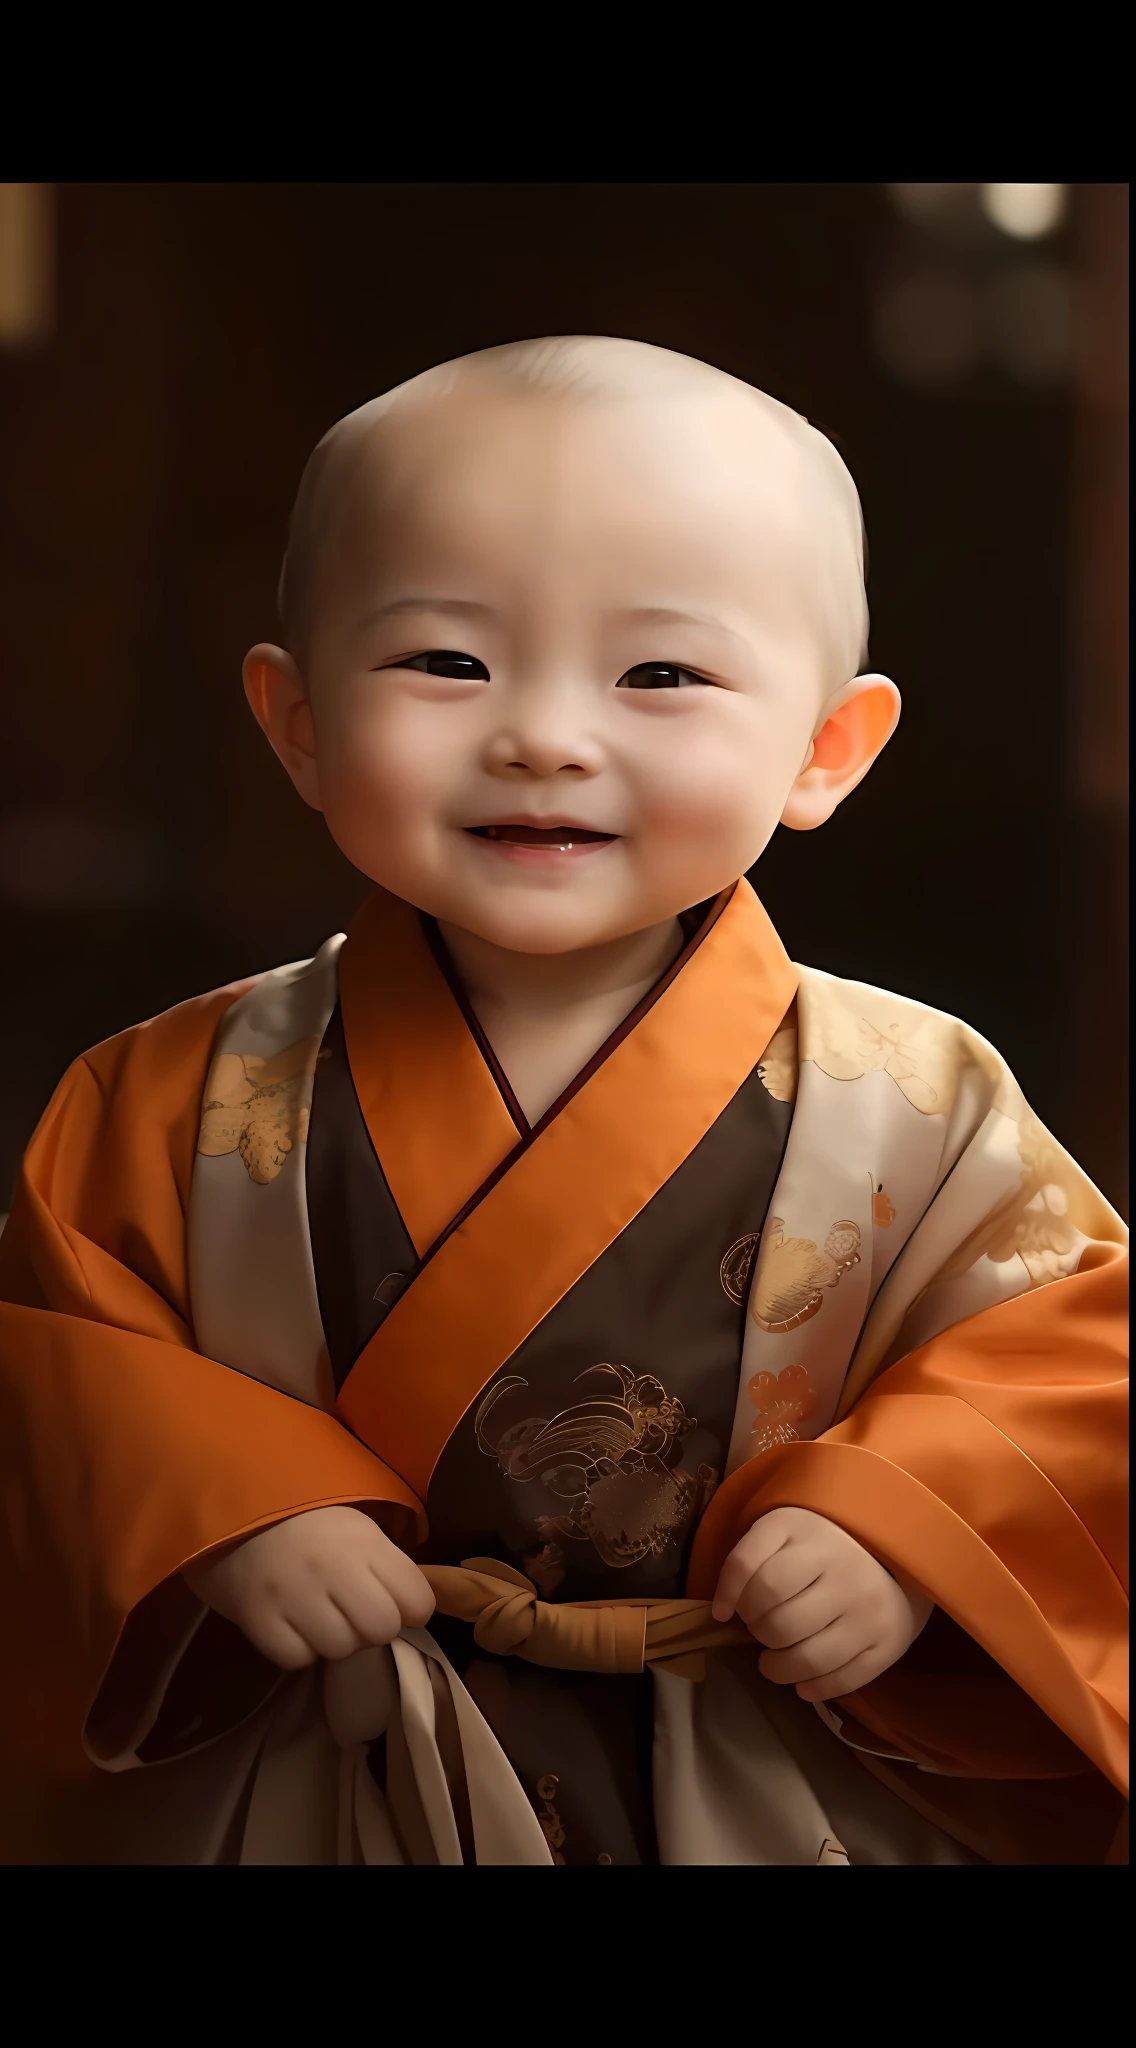 ローブを着た笑顔の赤ちゃんの接写, 素敵なデジタル絵画, 僧侶の服, 無邪気な笑顔, かわいい男の子, ワン愛らしい韓国の顔, 少し恥ずかしそうな笑顔, 穏やかな笑顔, 古代日本の僧侶, 幸せな表情で, 古代中国の服を着る, 中国の伝統的な, 彼は幸せだ, 中国の伝統衣装, 美しくて笑顔, 高品質のポートレート, 可愛い笑顔